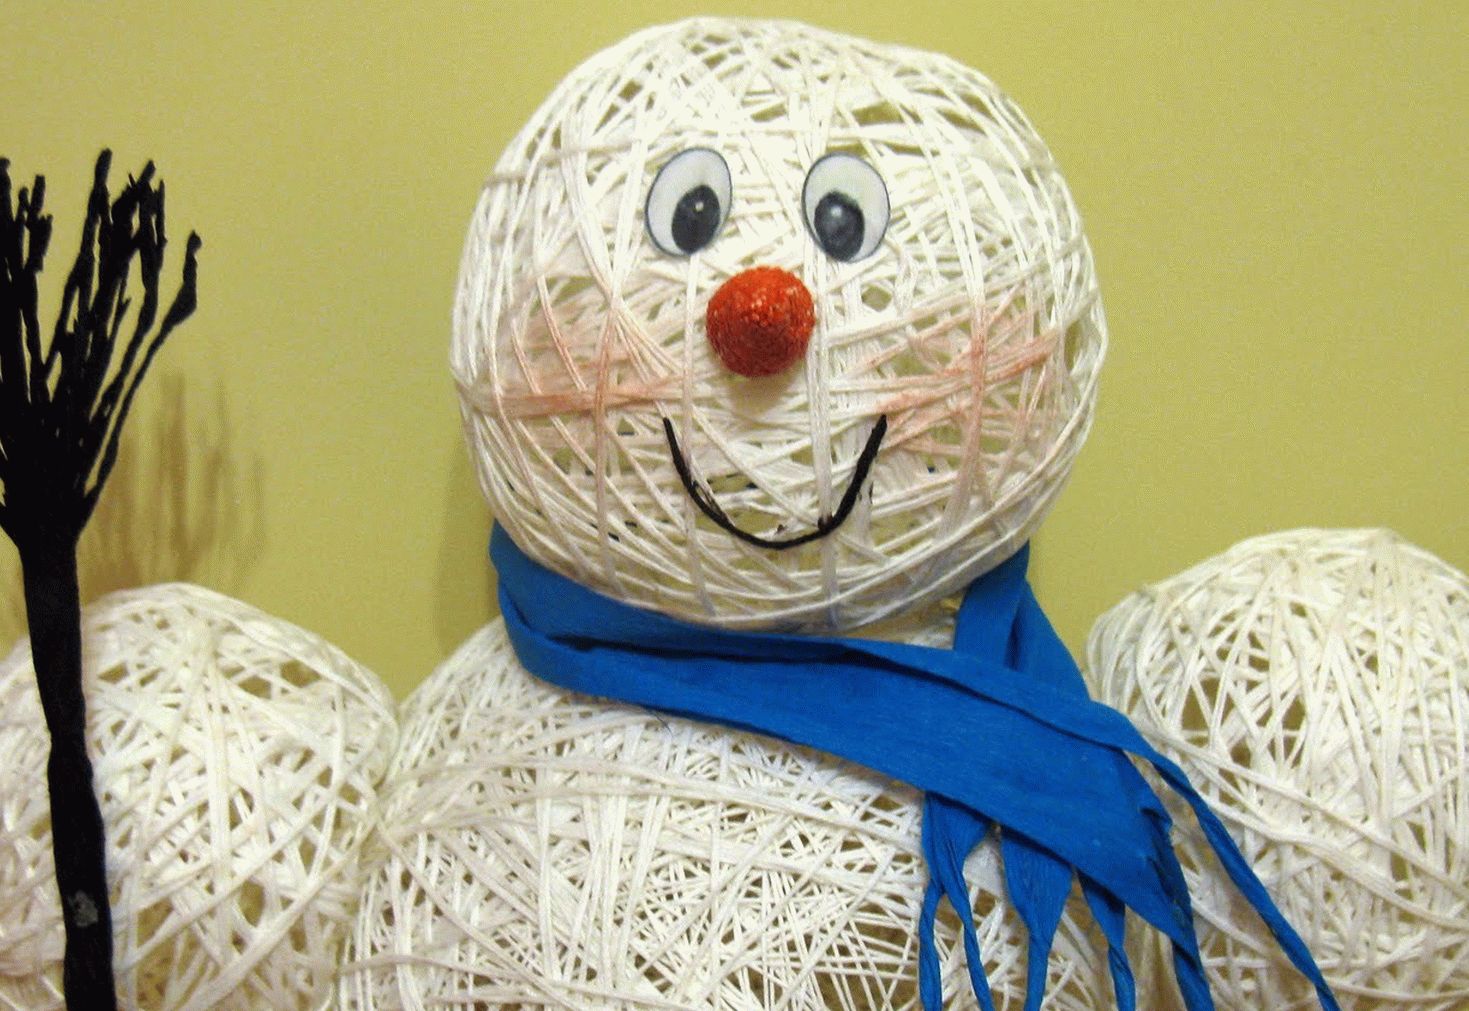 Снеговика можно сделать при помощи воздушных шариков, ниток и клея